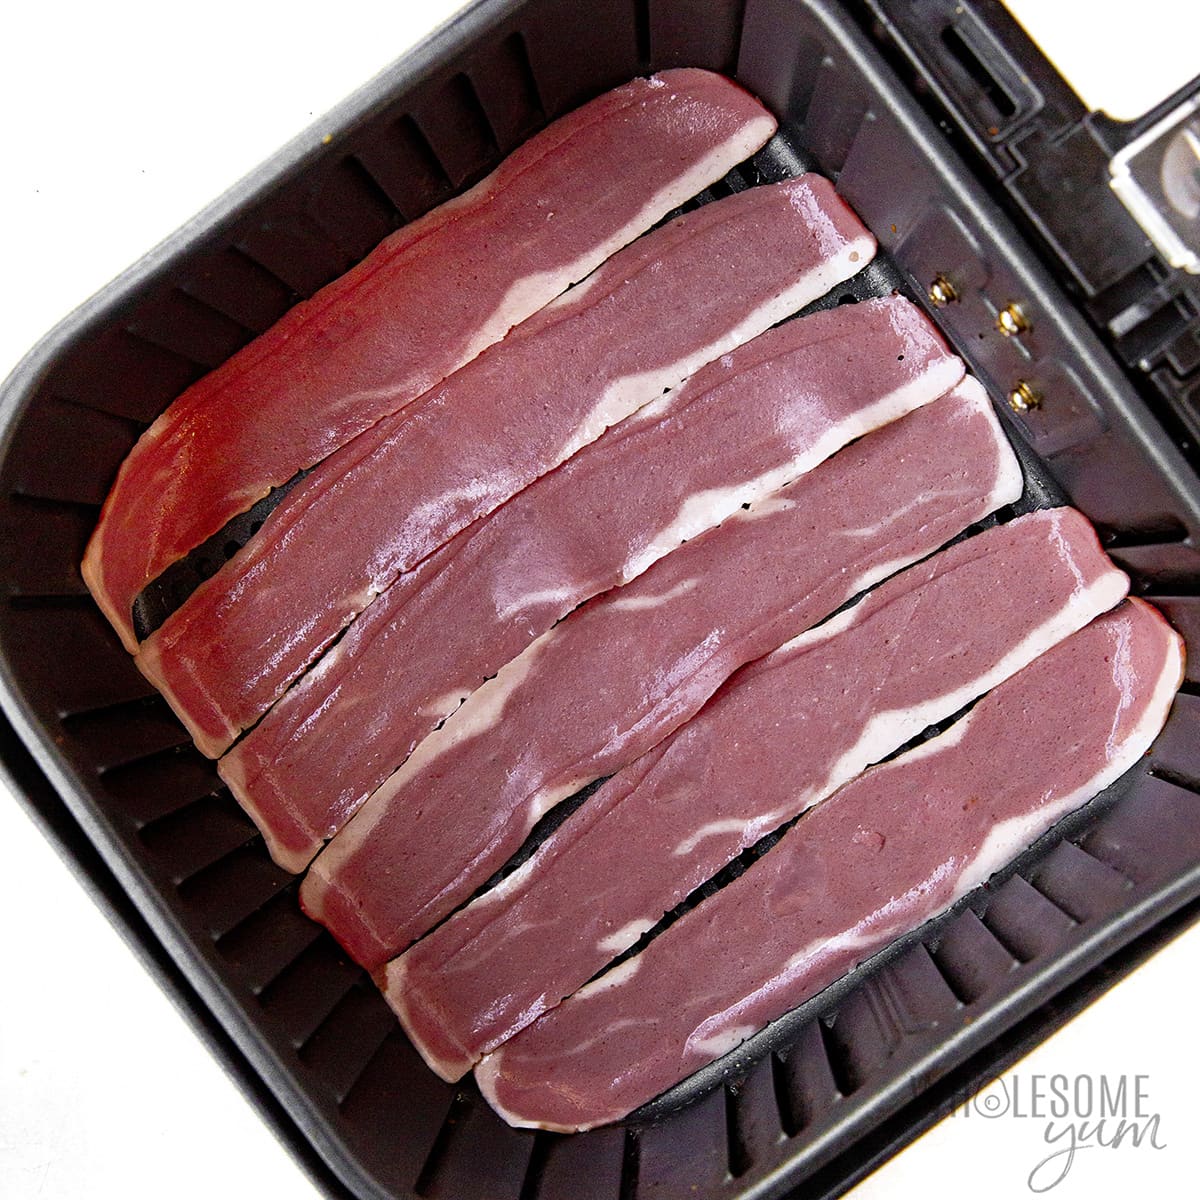 Raw turkey bacon in the fryer basket. 